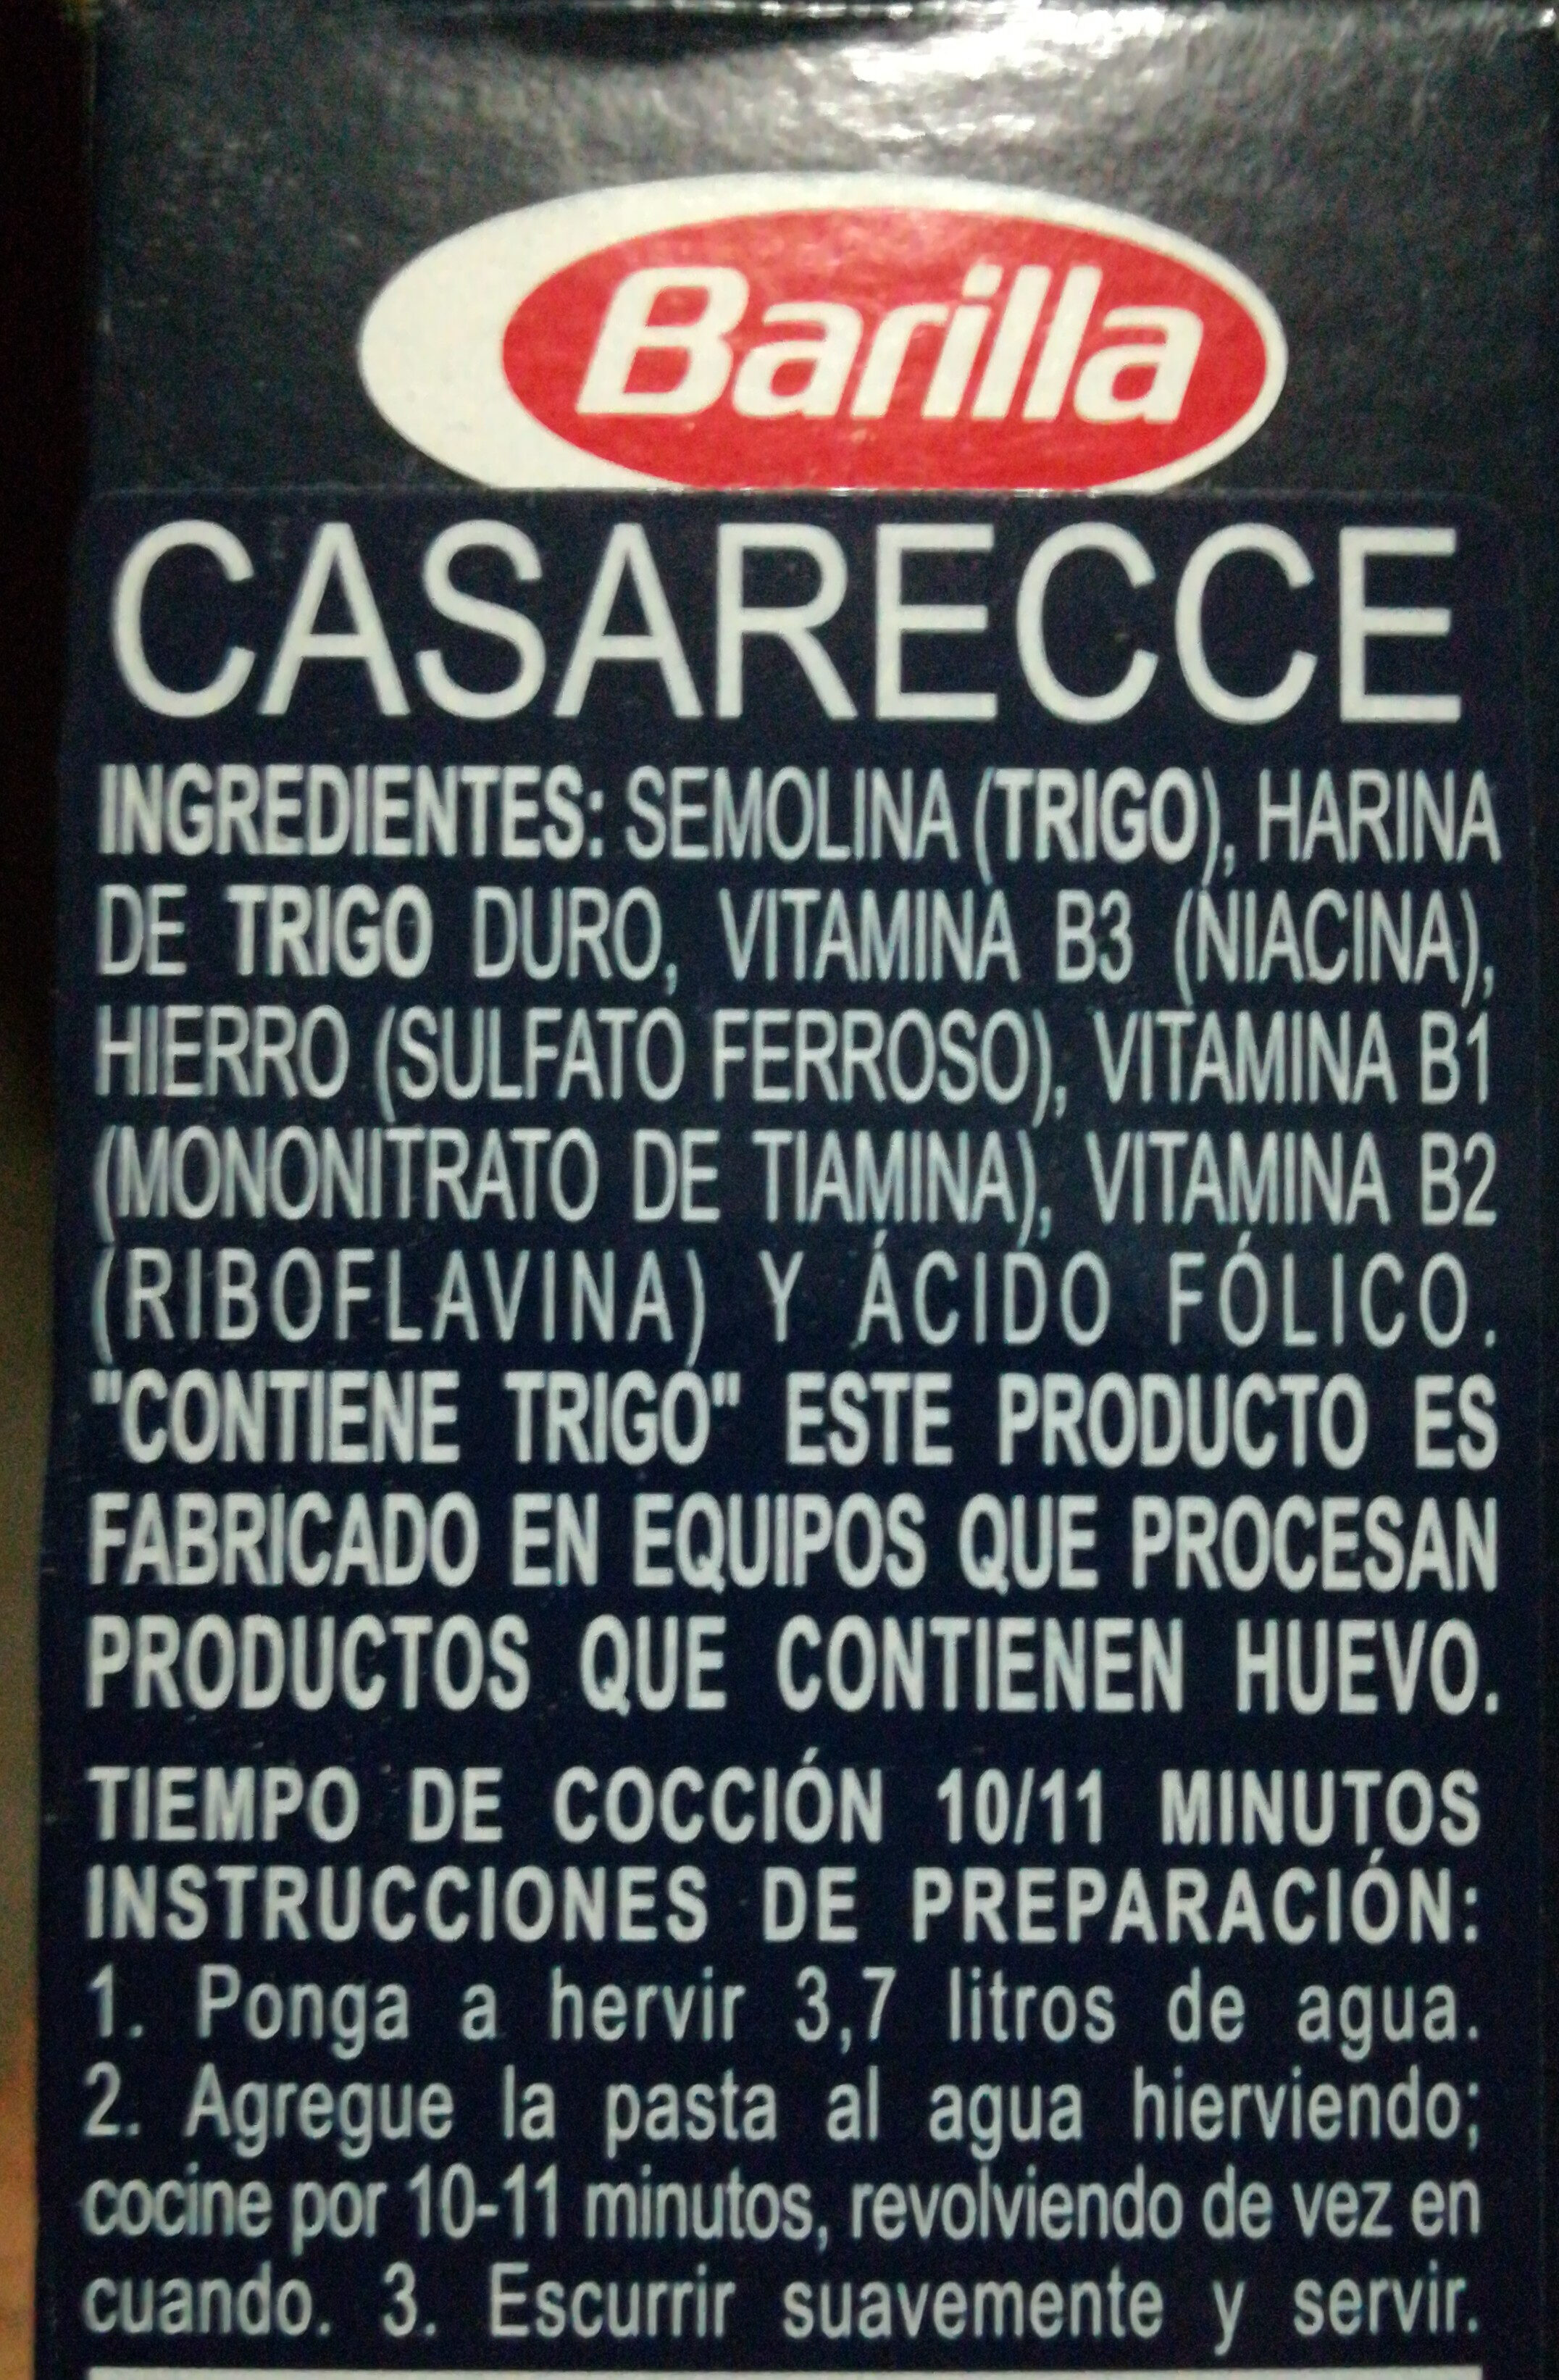 Casarecce - Ingredients